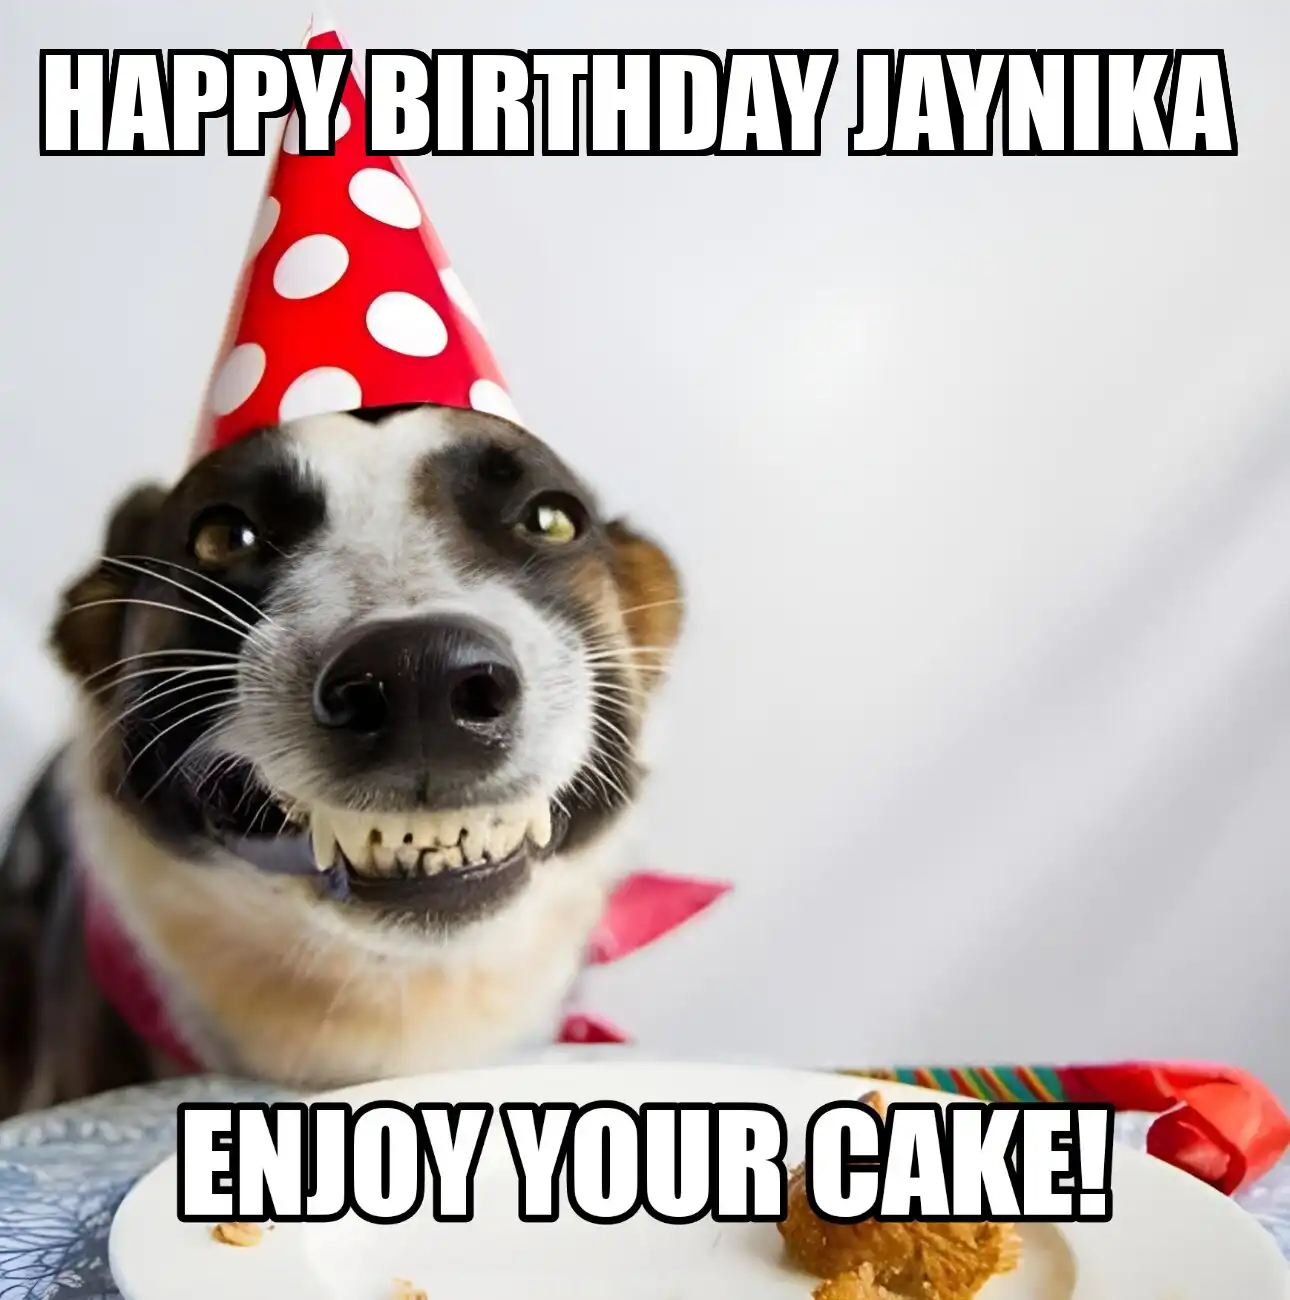 Happy Birthday Jaynika Enjoy Your Cake Dog Meme